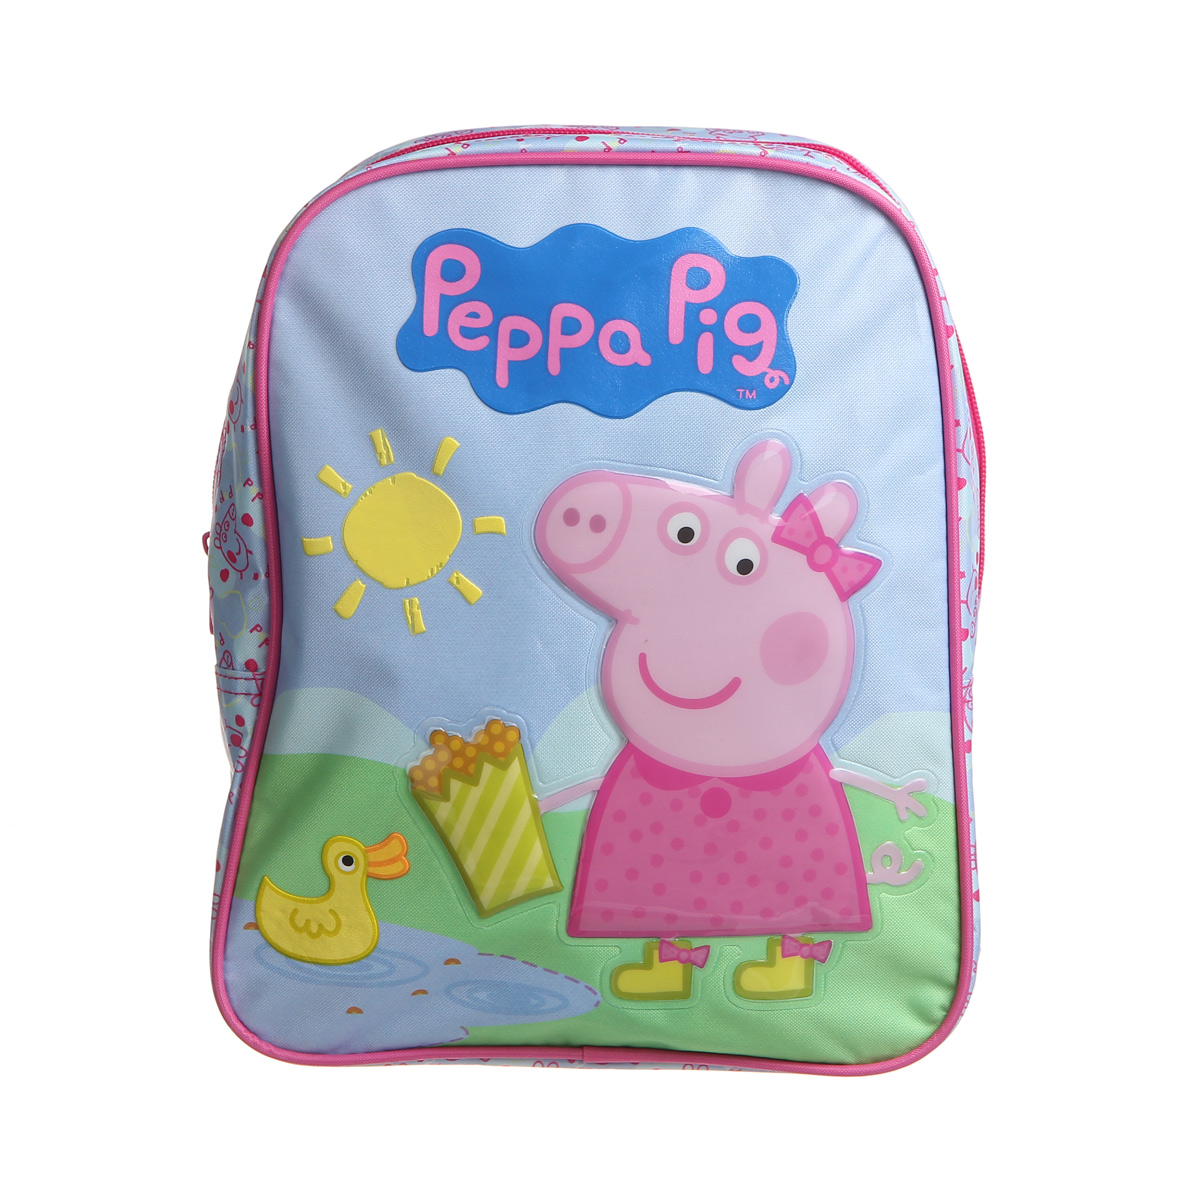 Peppa pig ice skating. Рюкзак со свинкой Пеппой. Пеппа детская игрушка. Свинка Пеппа детская. Детские сумки Peppa Pig.